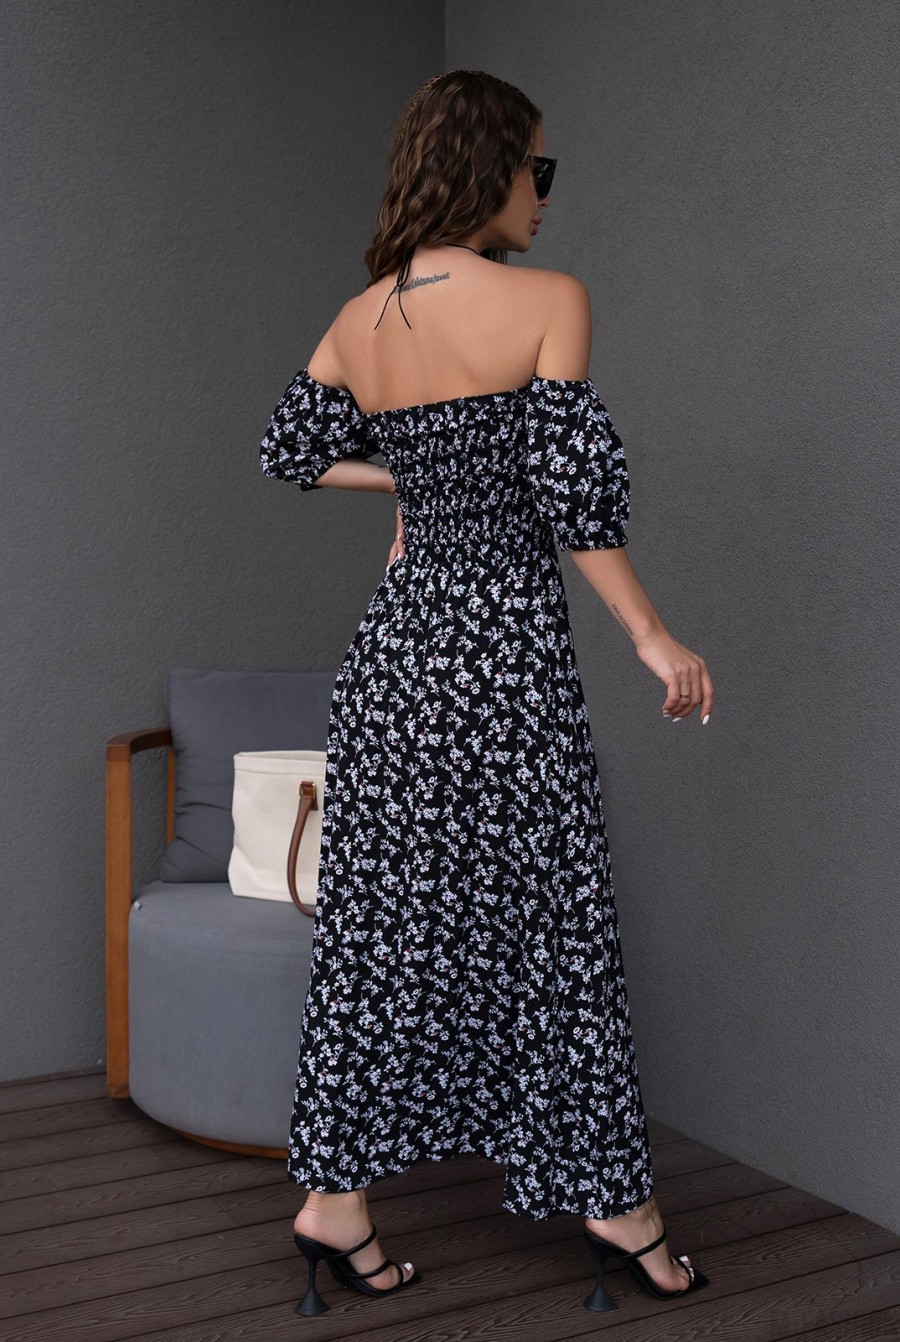 Черно-белое цветочное платье с лифом-жаткой - Фото 3